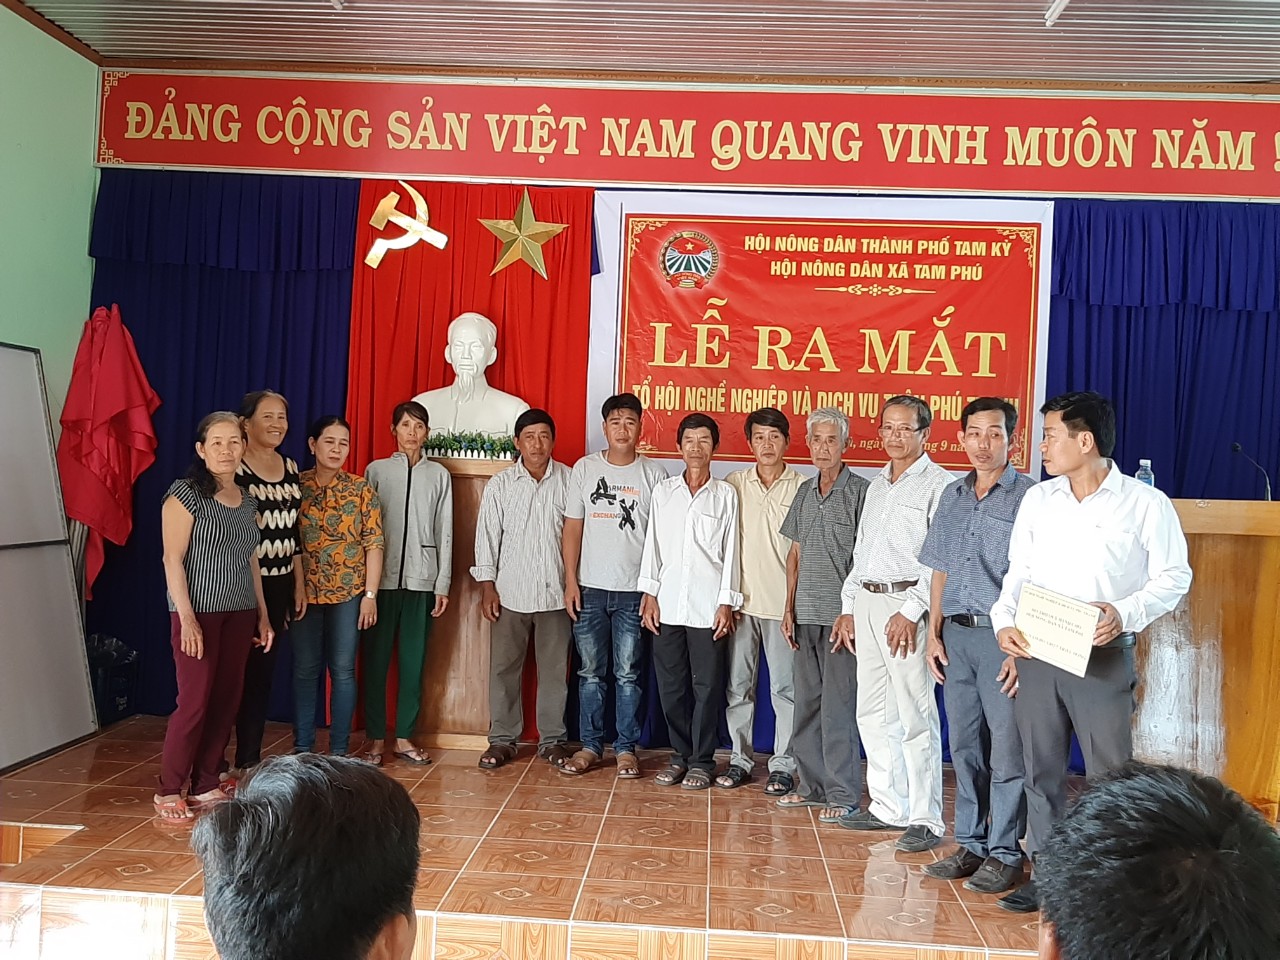 Ra mắt tổ Hội nghề nghiệp và dịch vụ tại thôn Phú Thạnh